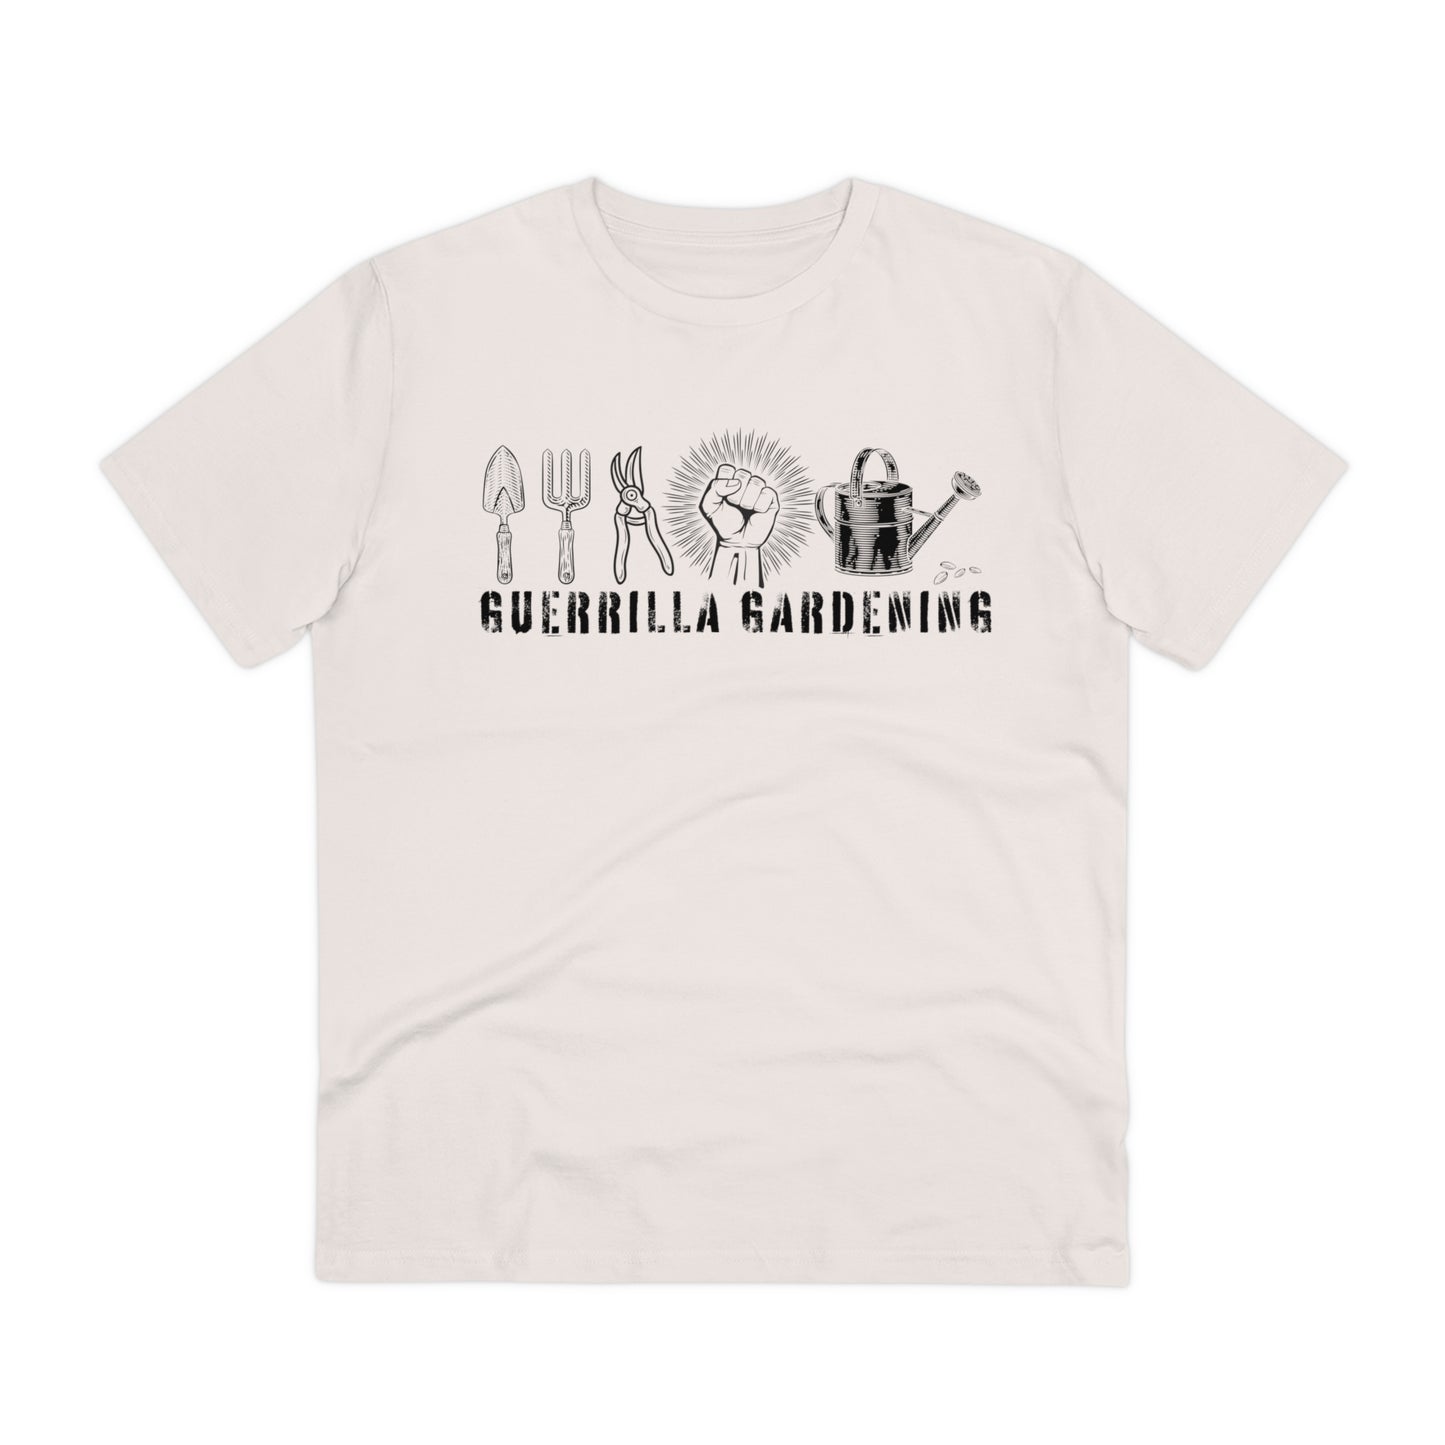 Guerrilla Gardening Organic T-shirt - Unisex